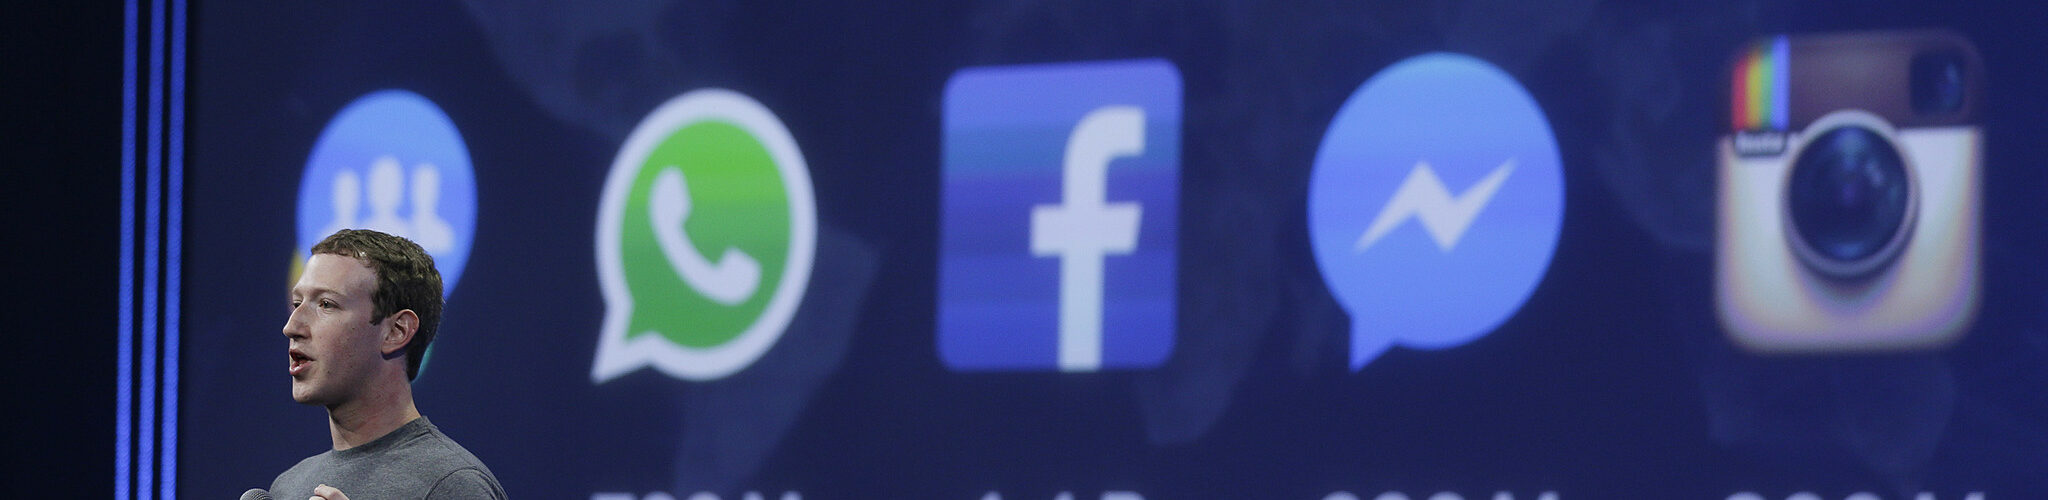 Portparol Kremlja: Rusija će proveriti da li Fejsbuk i Instagram dozvoljavaju pozive na nasilje prema Rusima